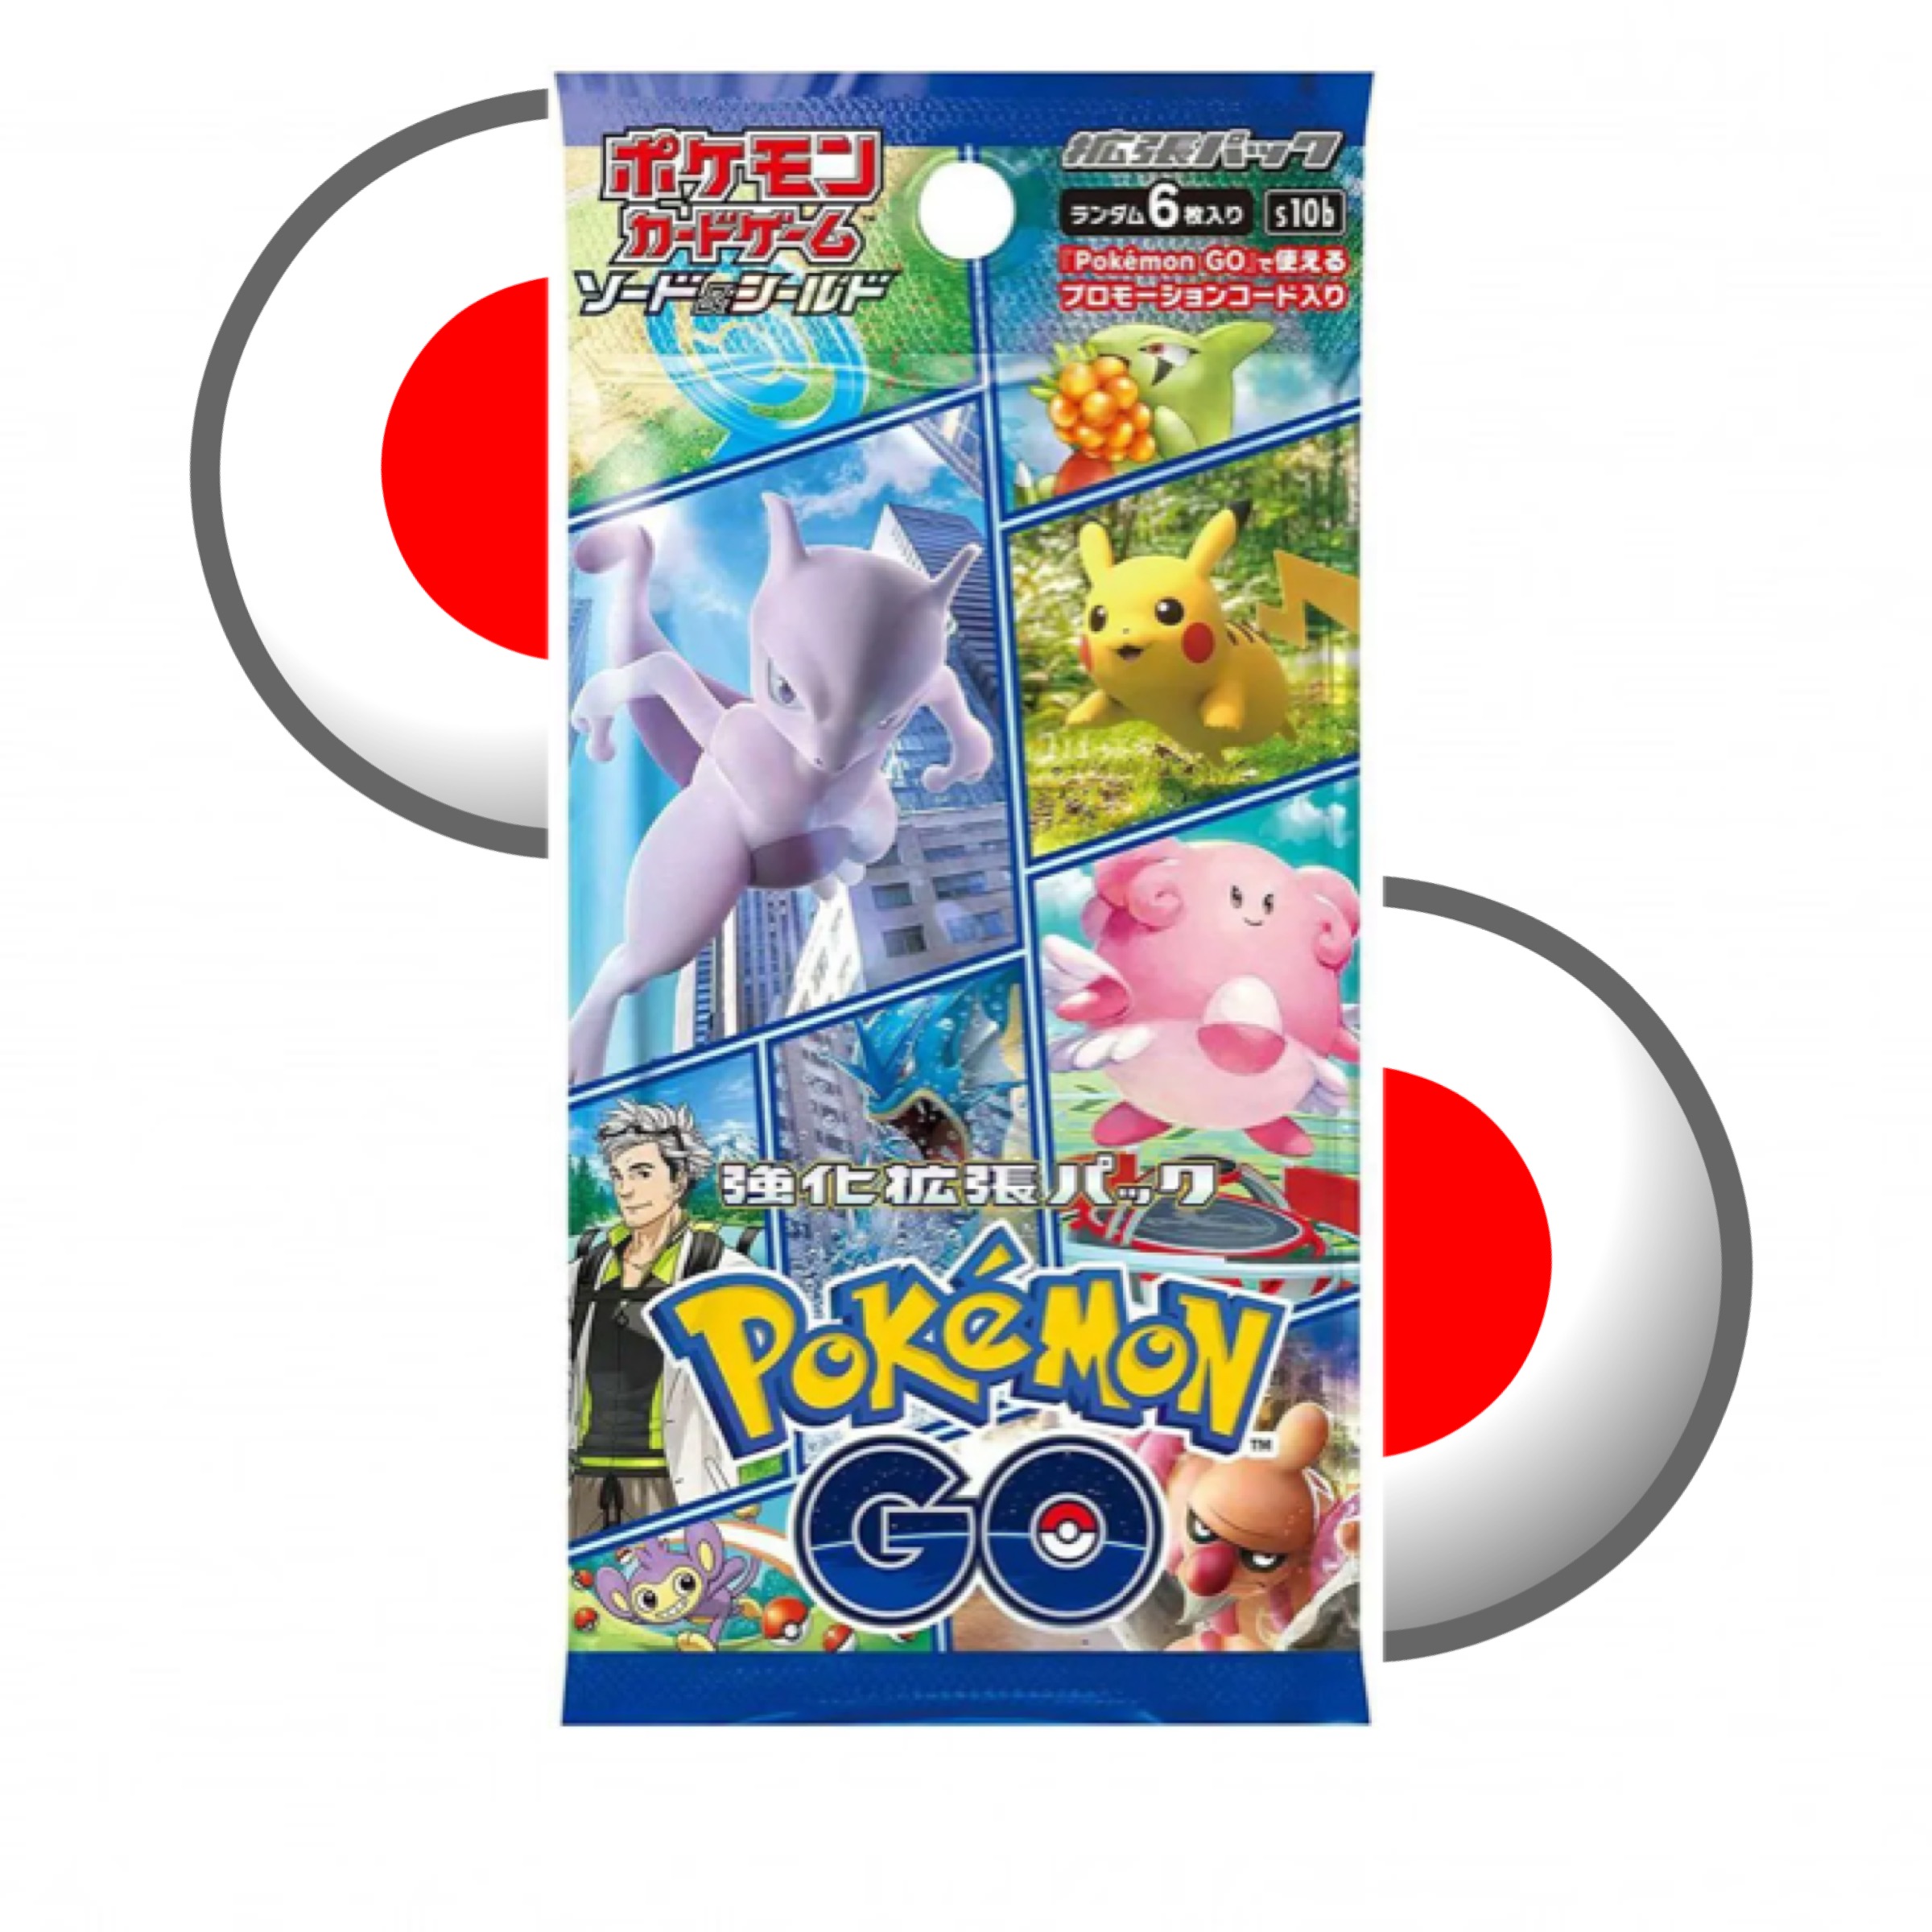 Pokémon Japans boosterpack s10b